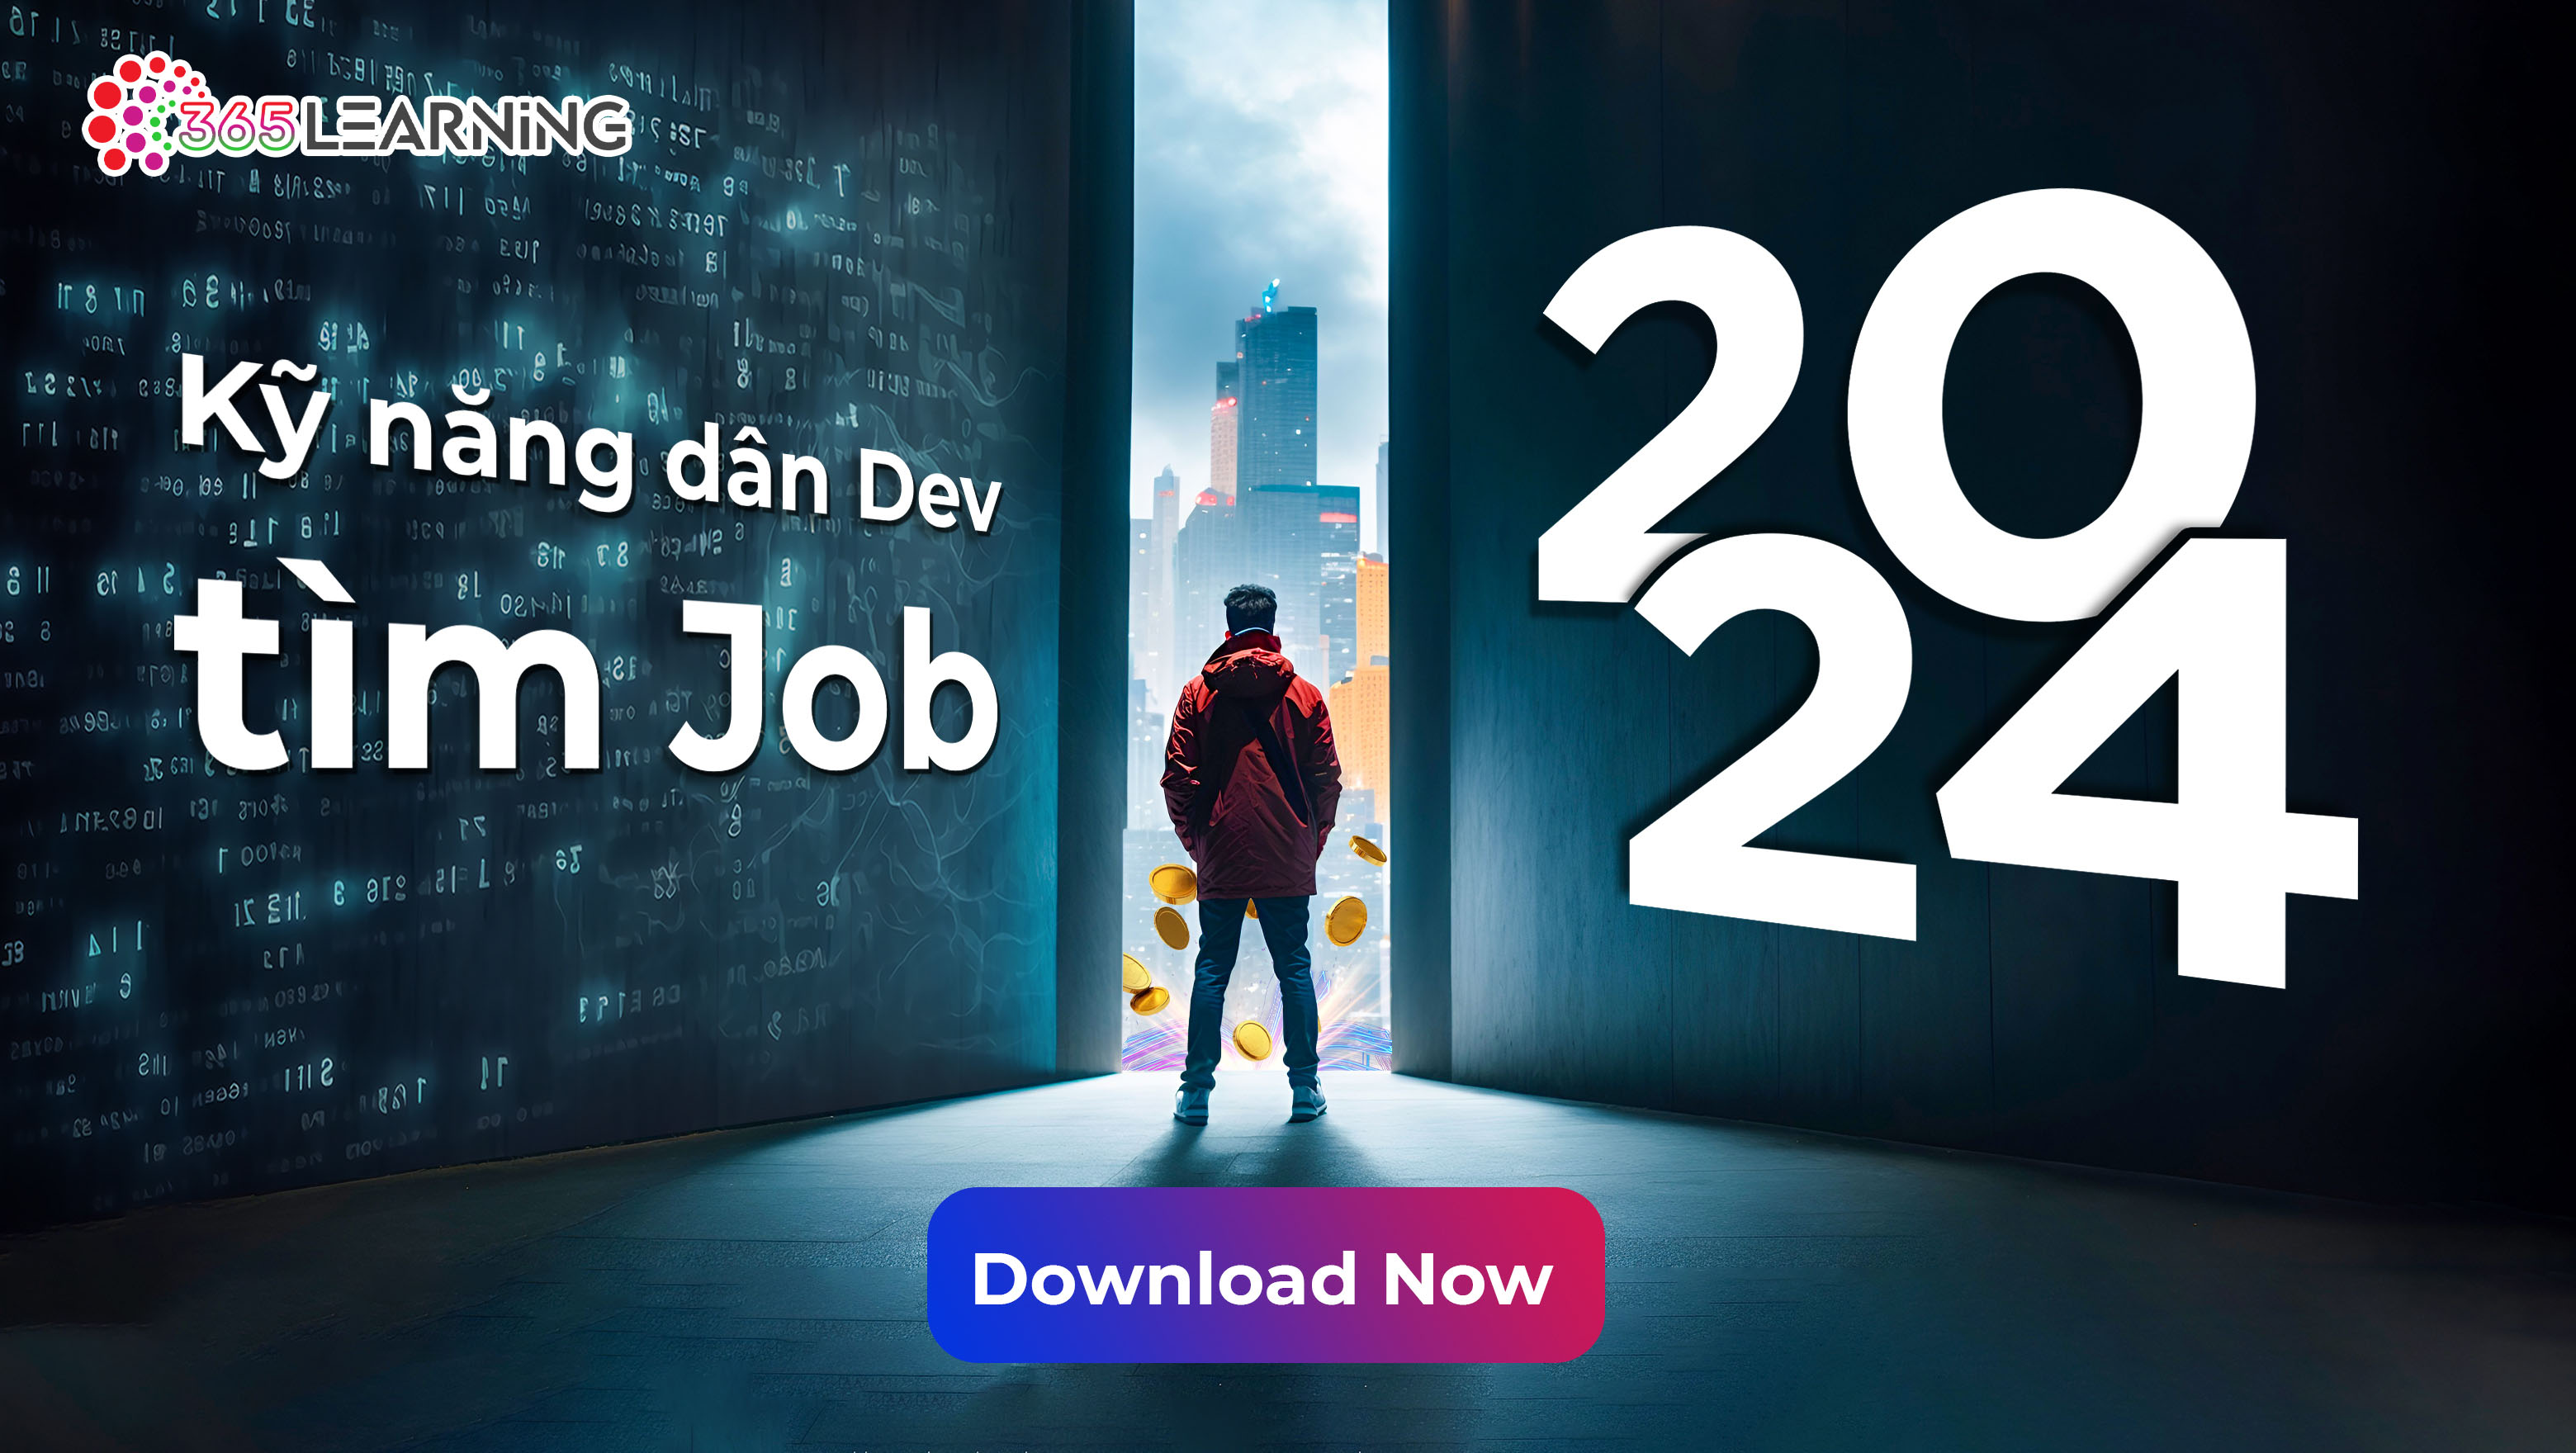 Kỹ năng dân Dev tìm Job năm 2024